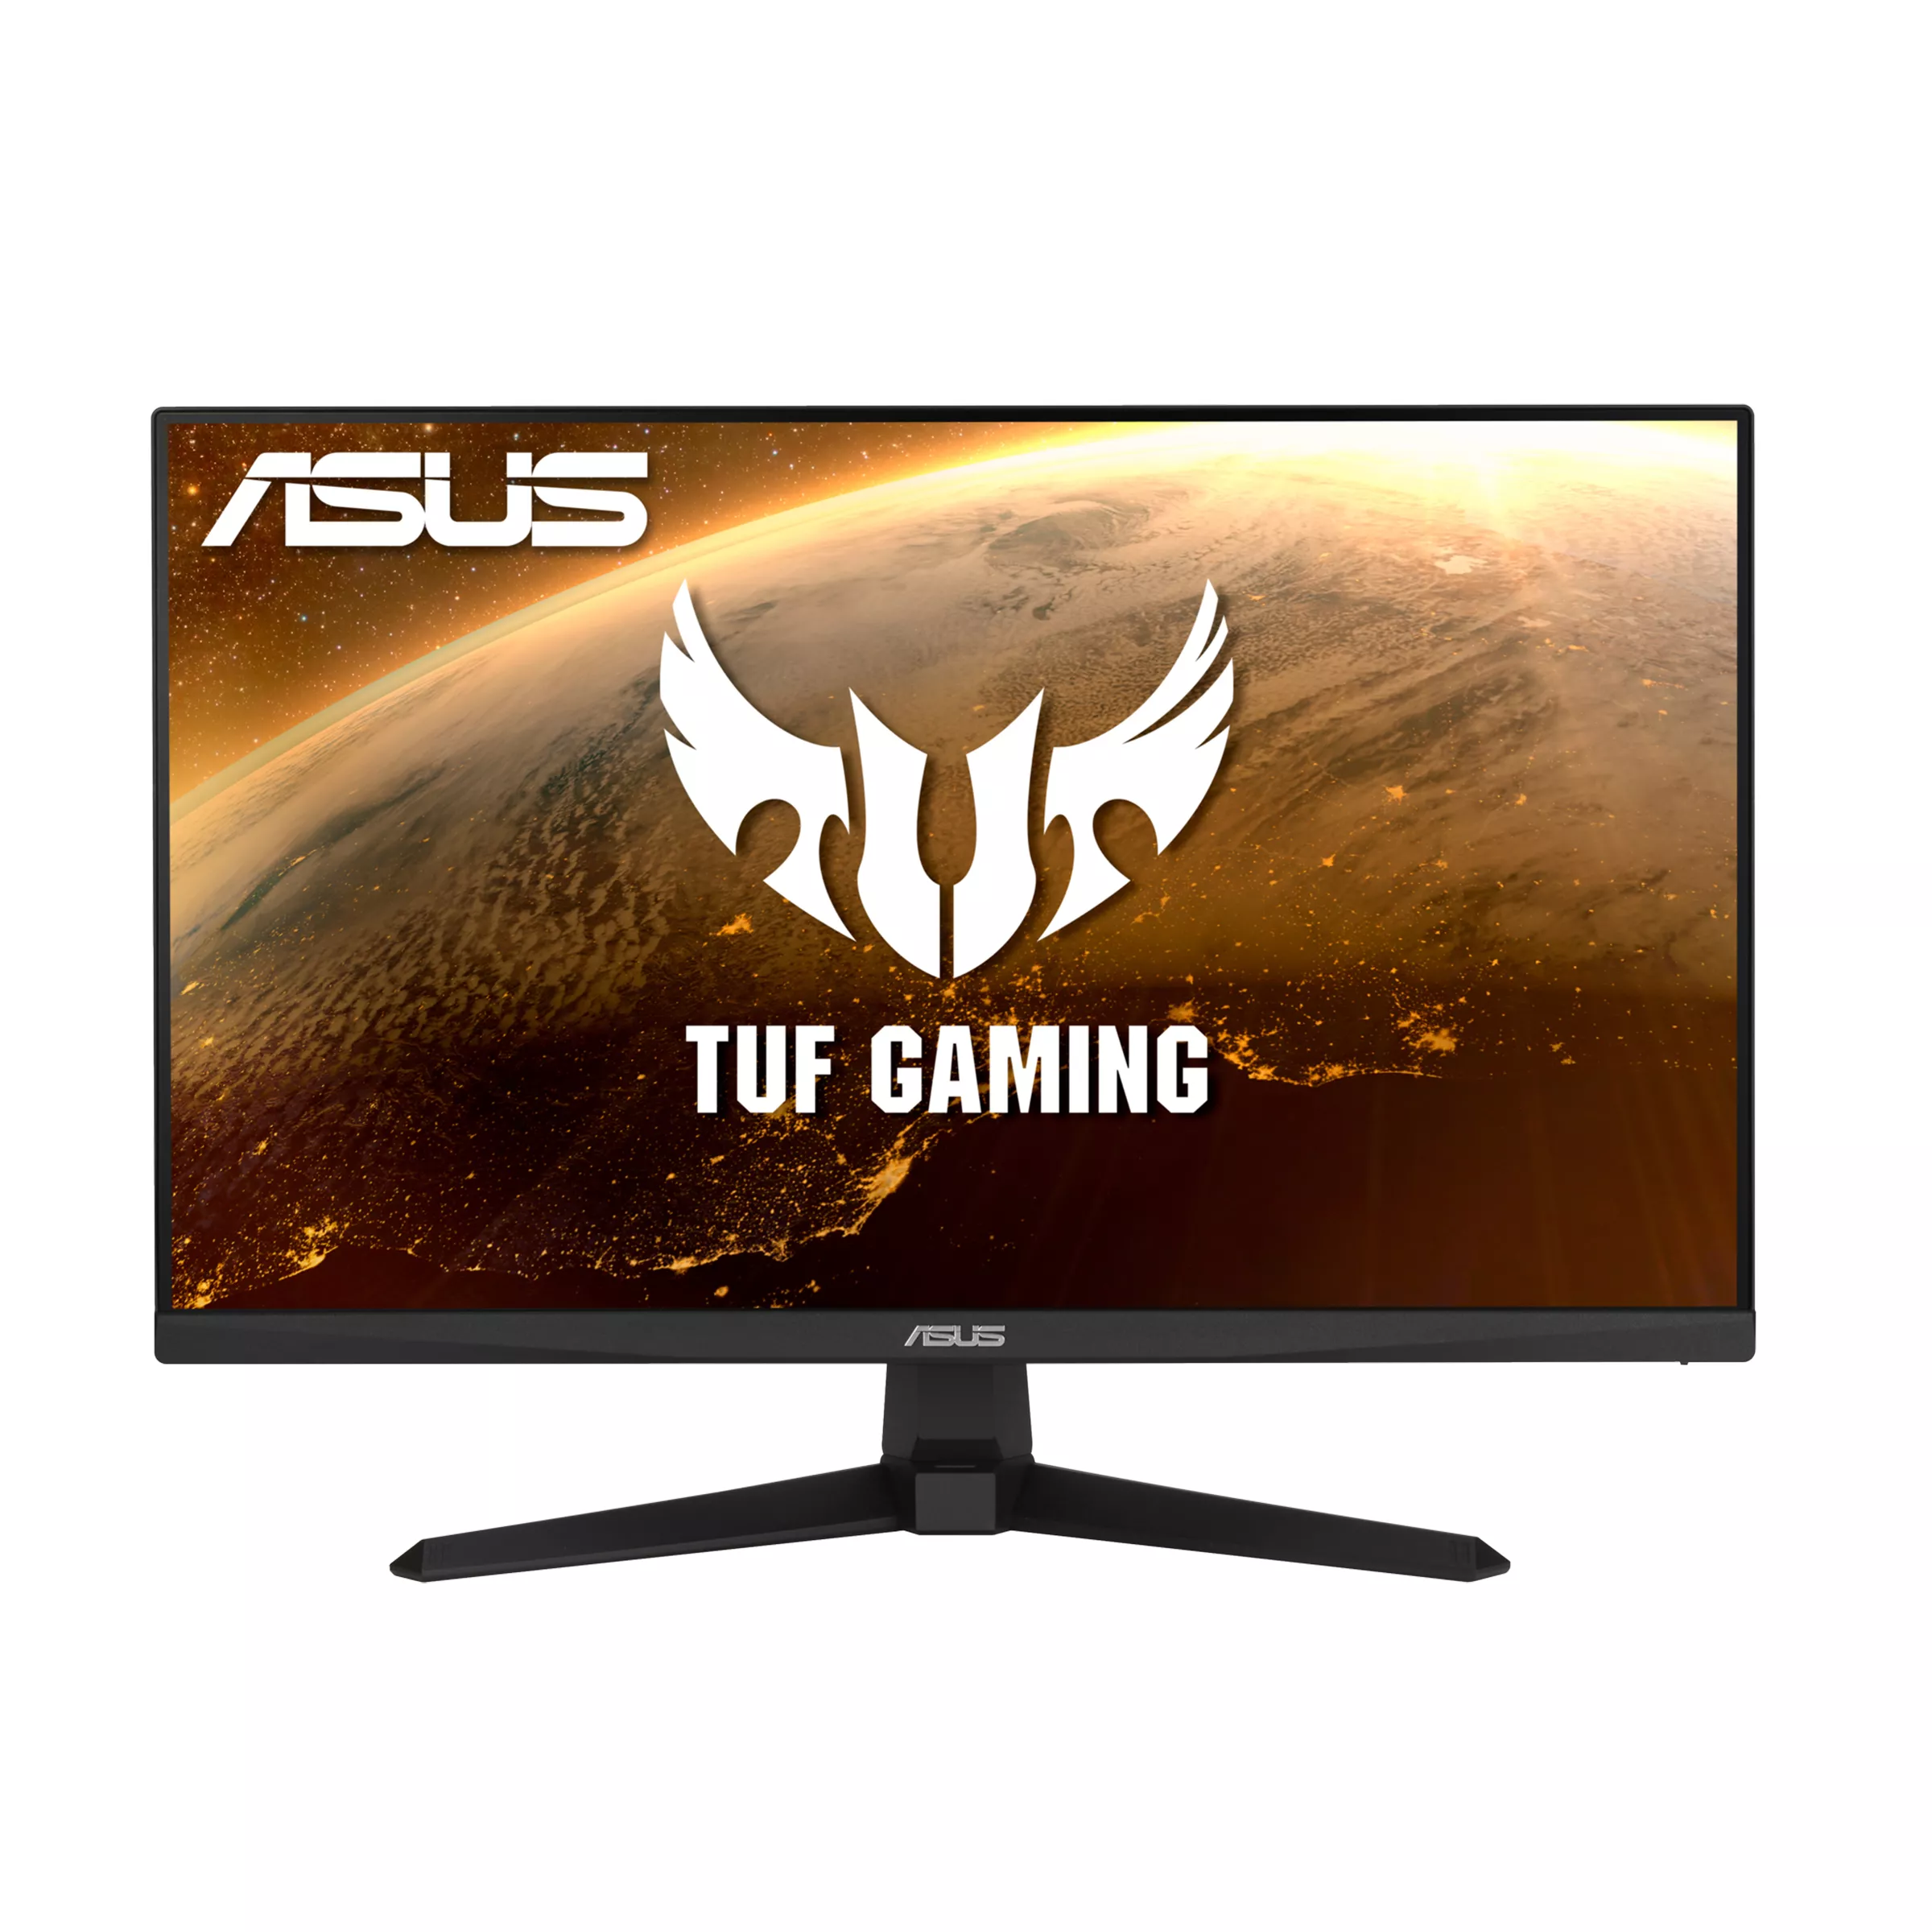 Achat ASUS VG249Q1A 24 TUF Gaming 24p IPS FHD 1ms MPRT et autres produits de la marque ASUS